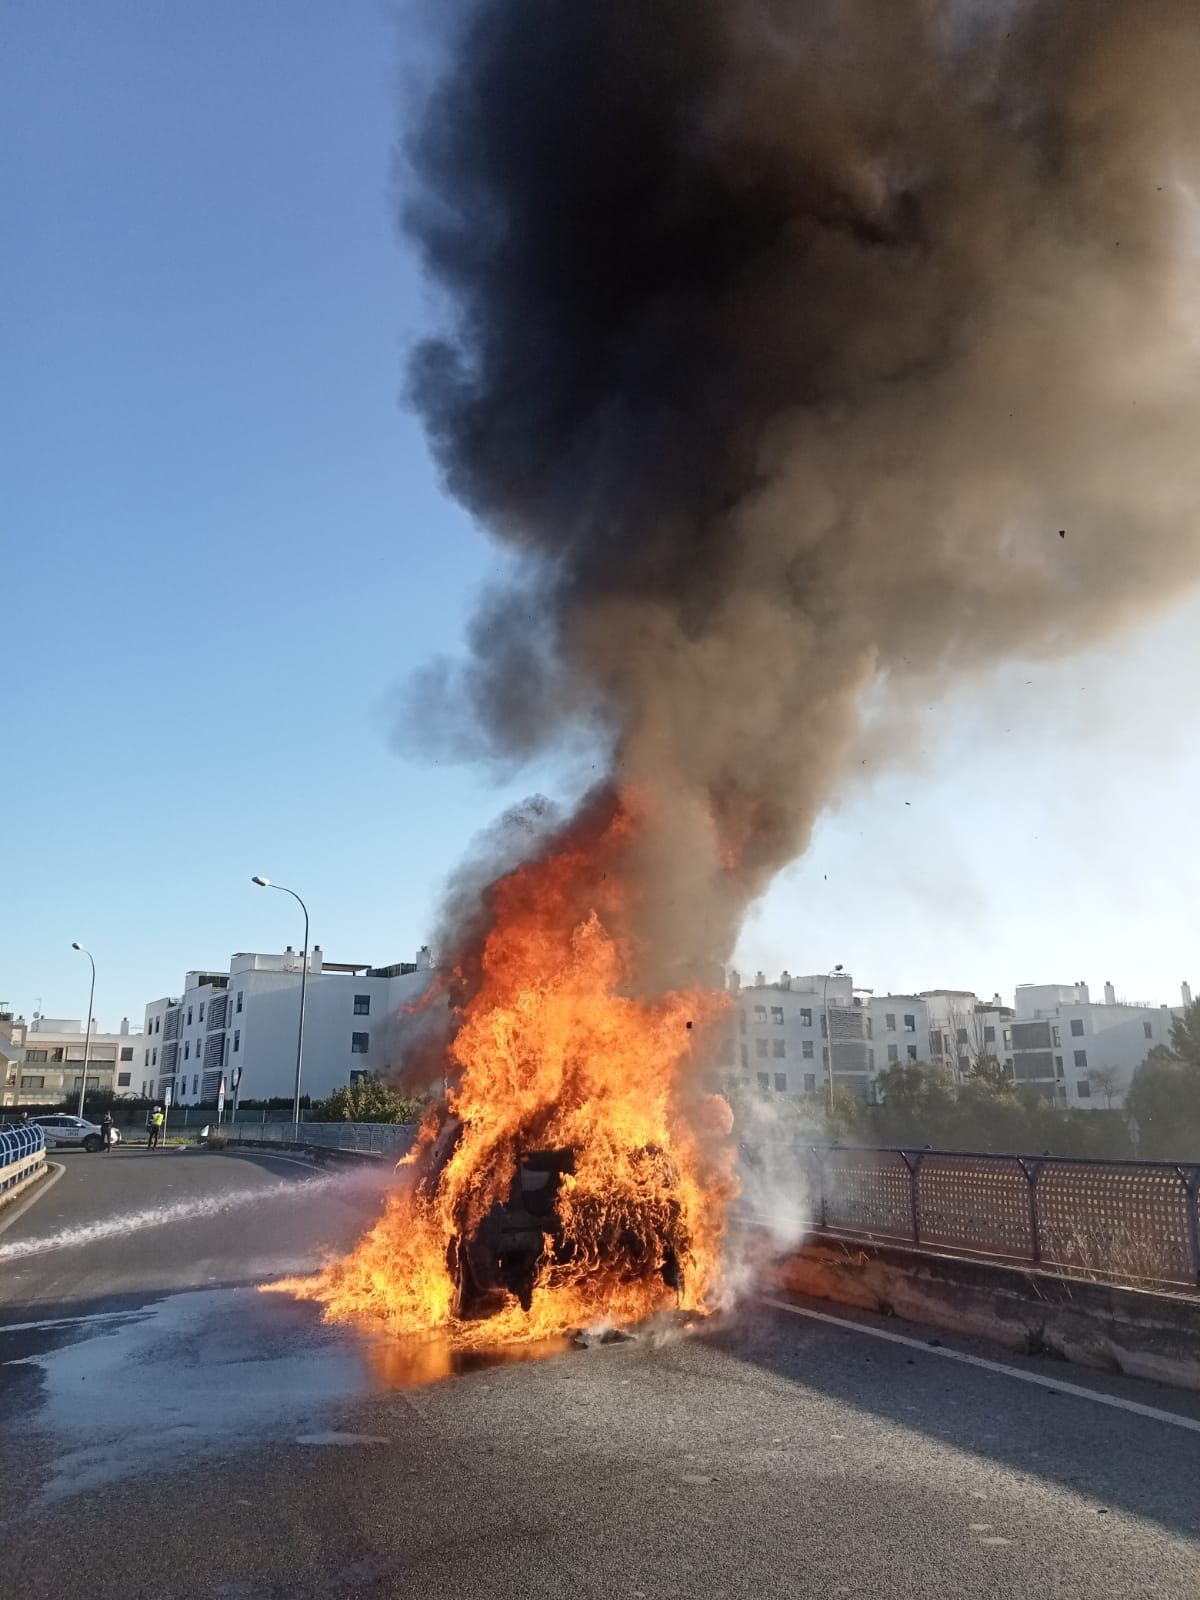 Un coche se incendia sobre un puente de la Vía de Cintura de Palma